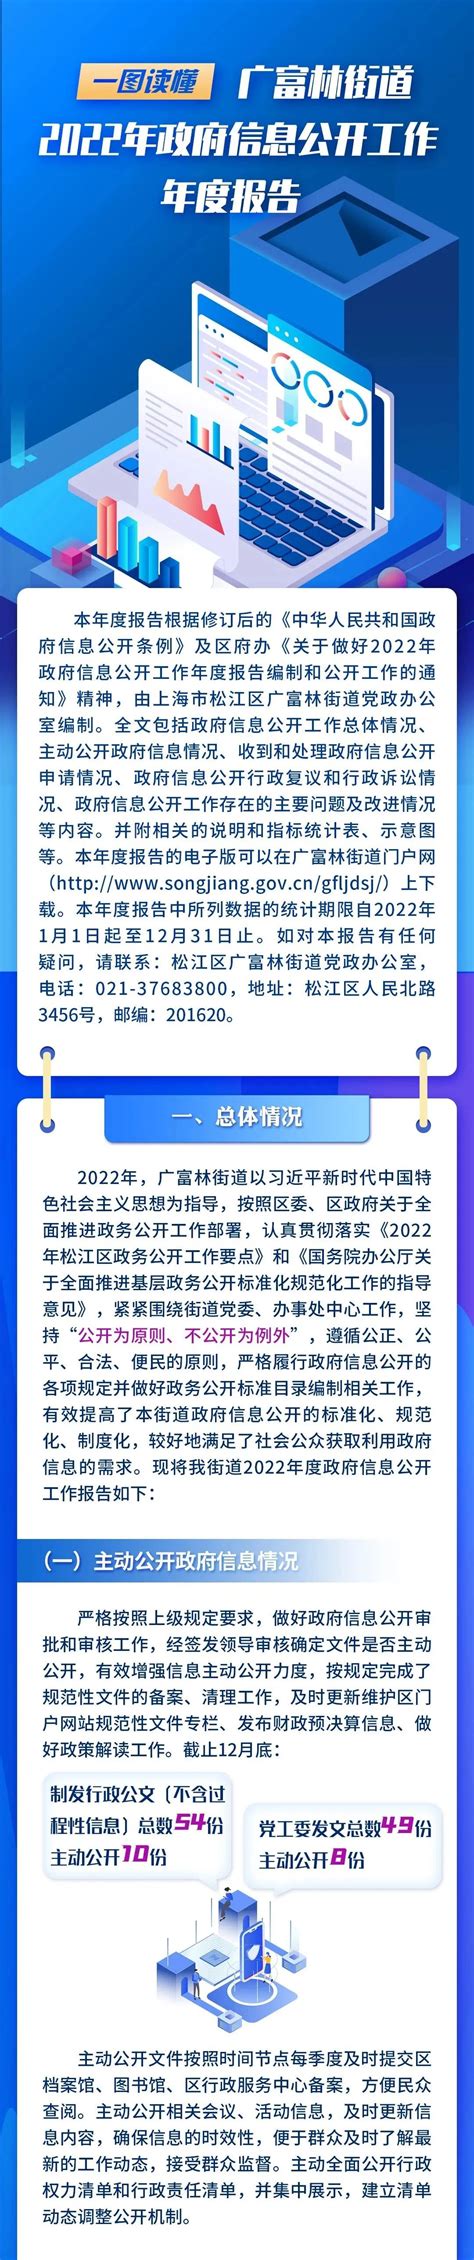 一图读懂 《上海市松江区审计局2022年政府信息公开工作年度报告》